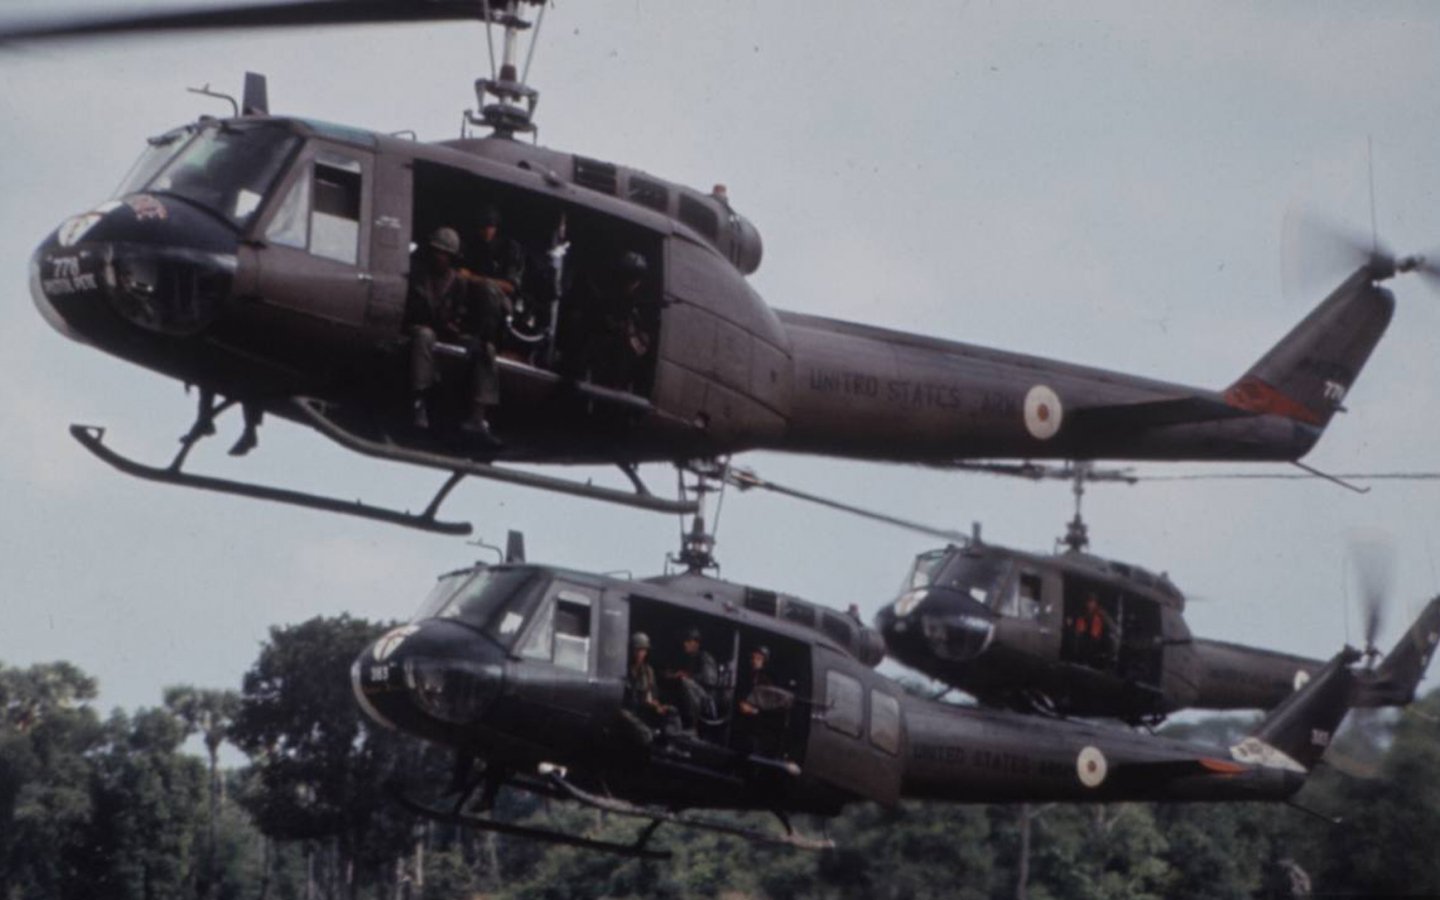 Американские вертолеты во вьетнаме название